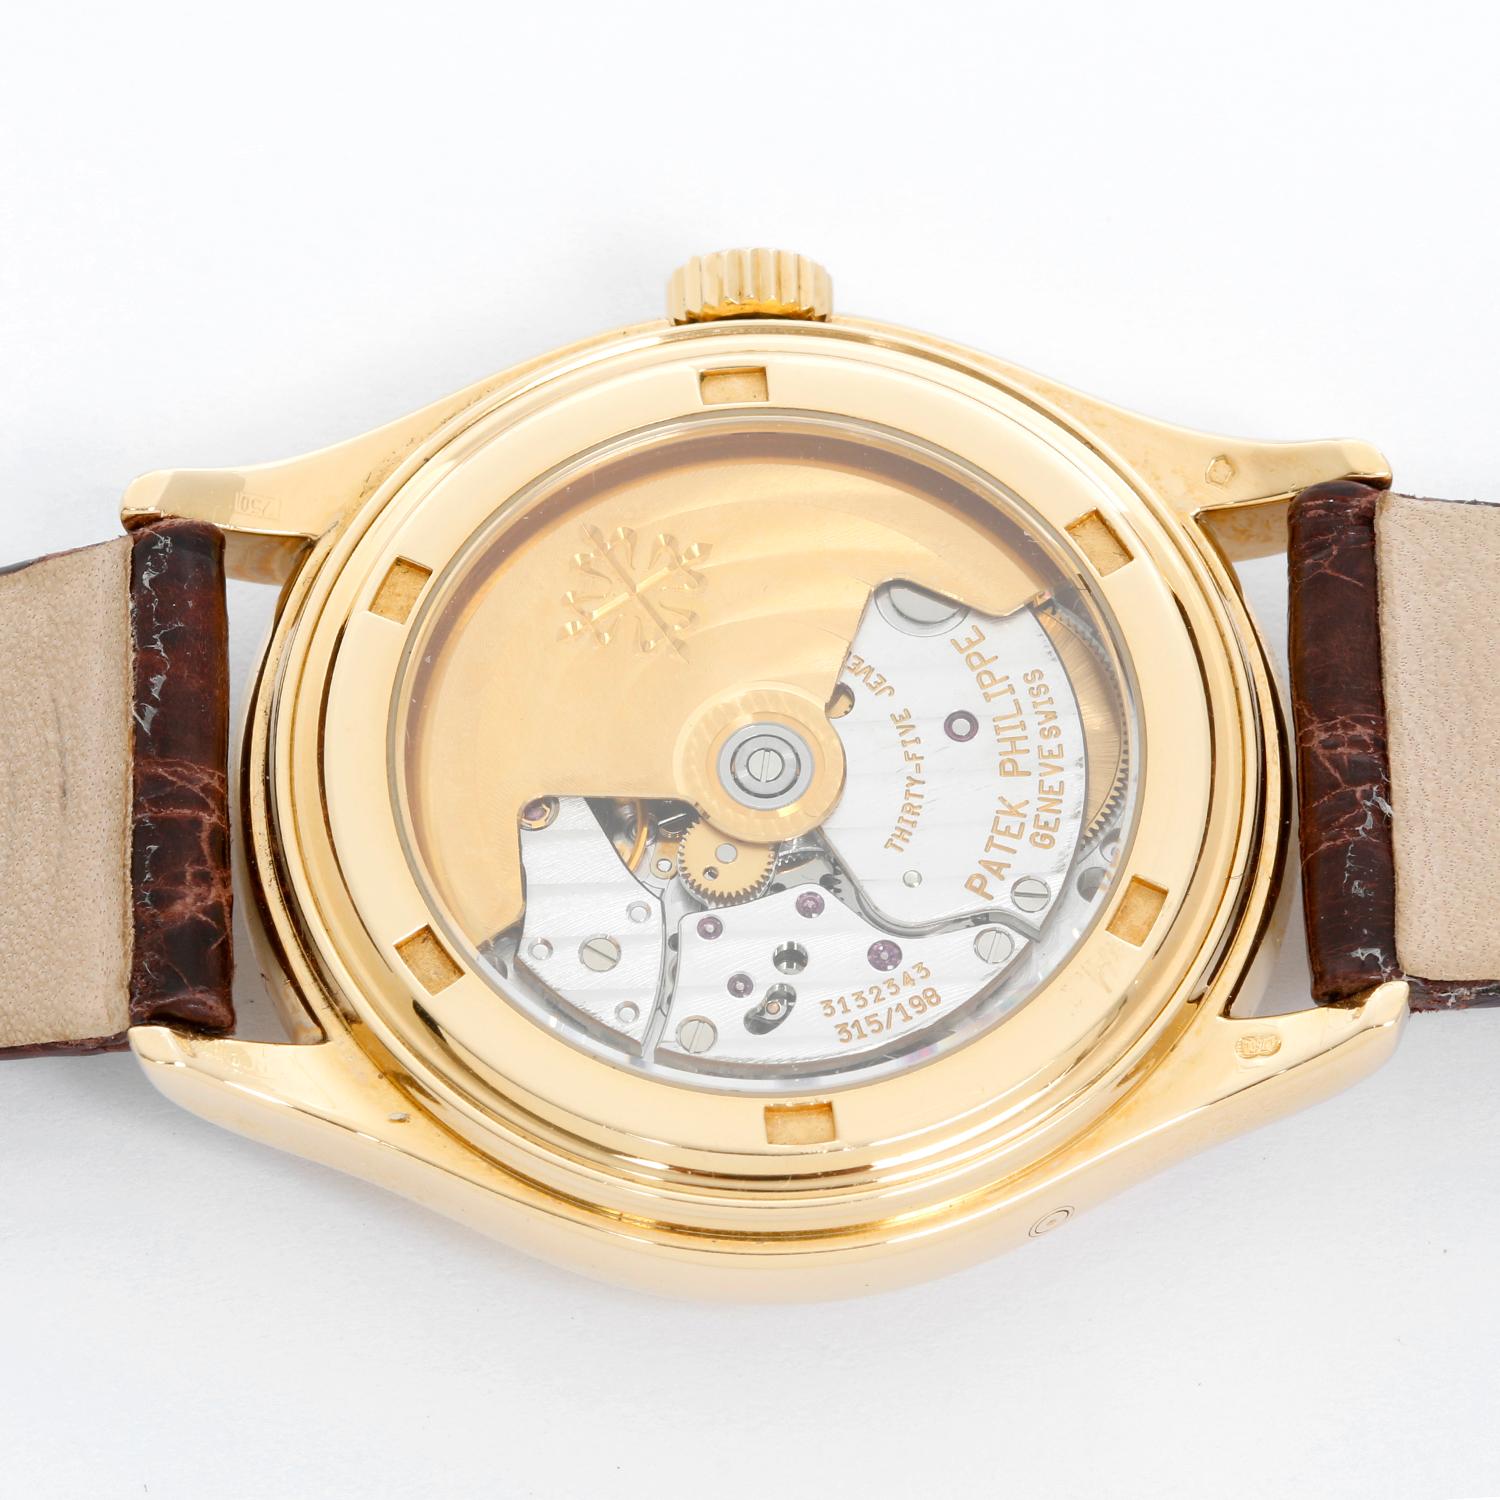 Patek Philippe Annular Calendar 18 Karat Gold Men's Watch 5035 J ‘or 5035j’ In Excellent Condition In Dallas, TX